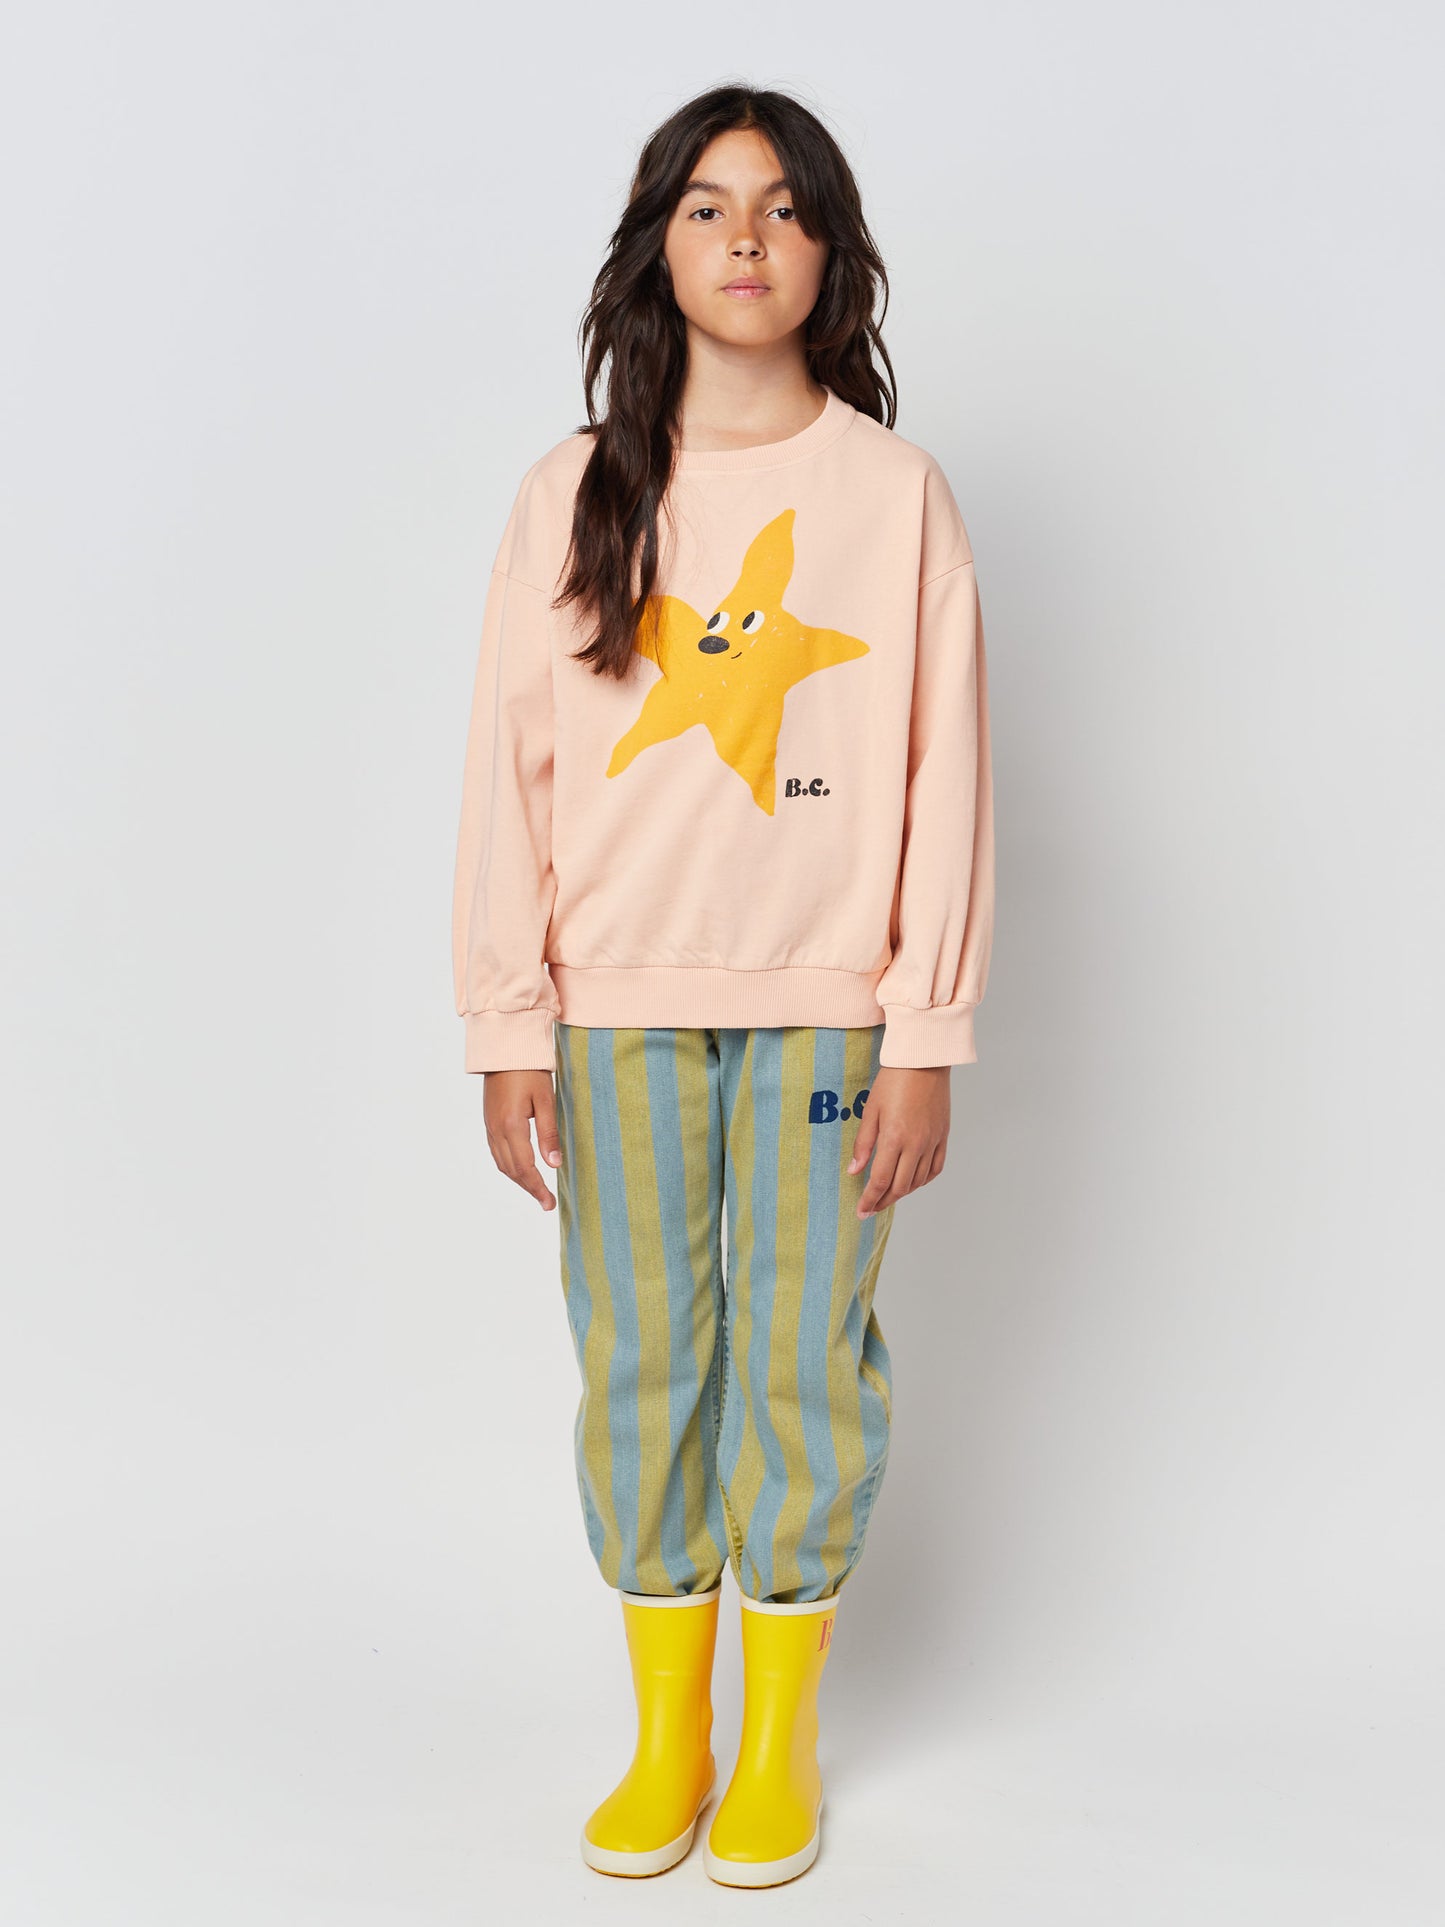 Starfish sweatshirt